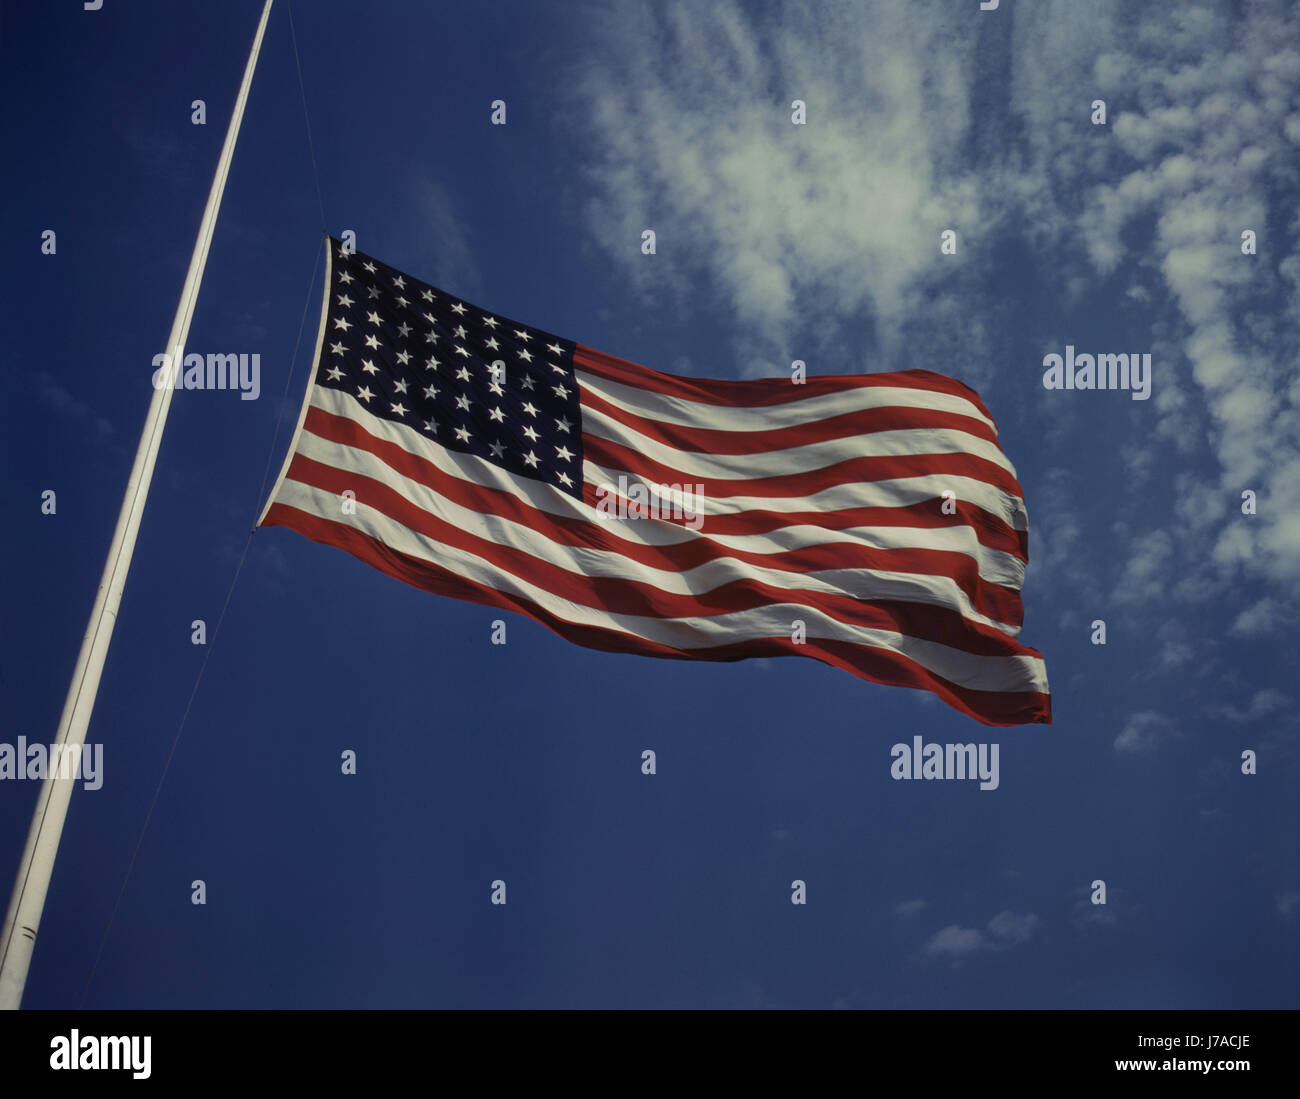 Brandissant le drapeau américain dans le vent à Fort Knox, Kentucky. Banque D'Images